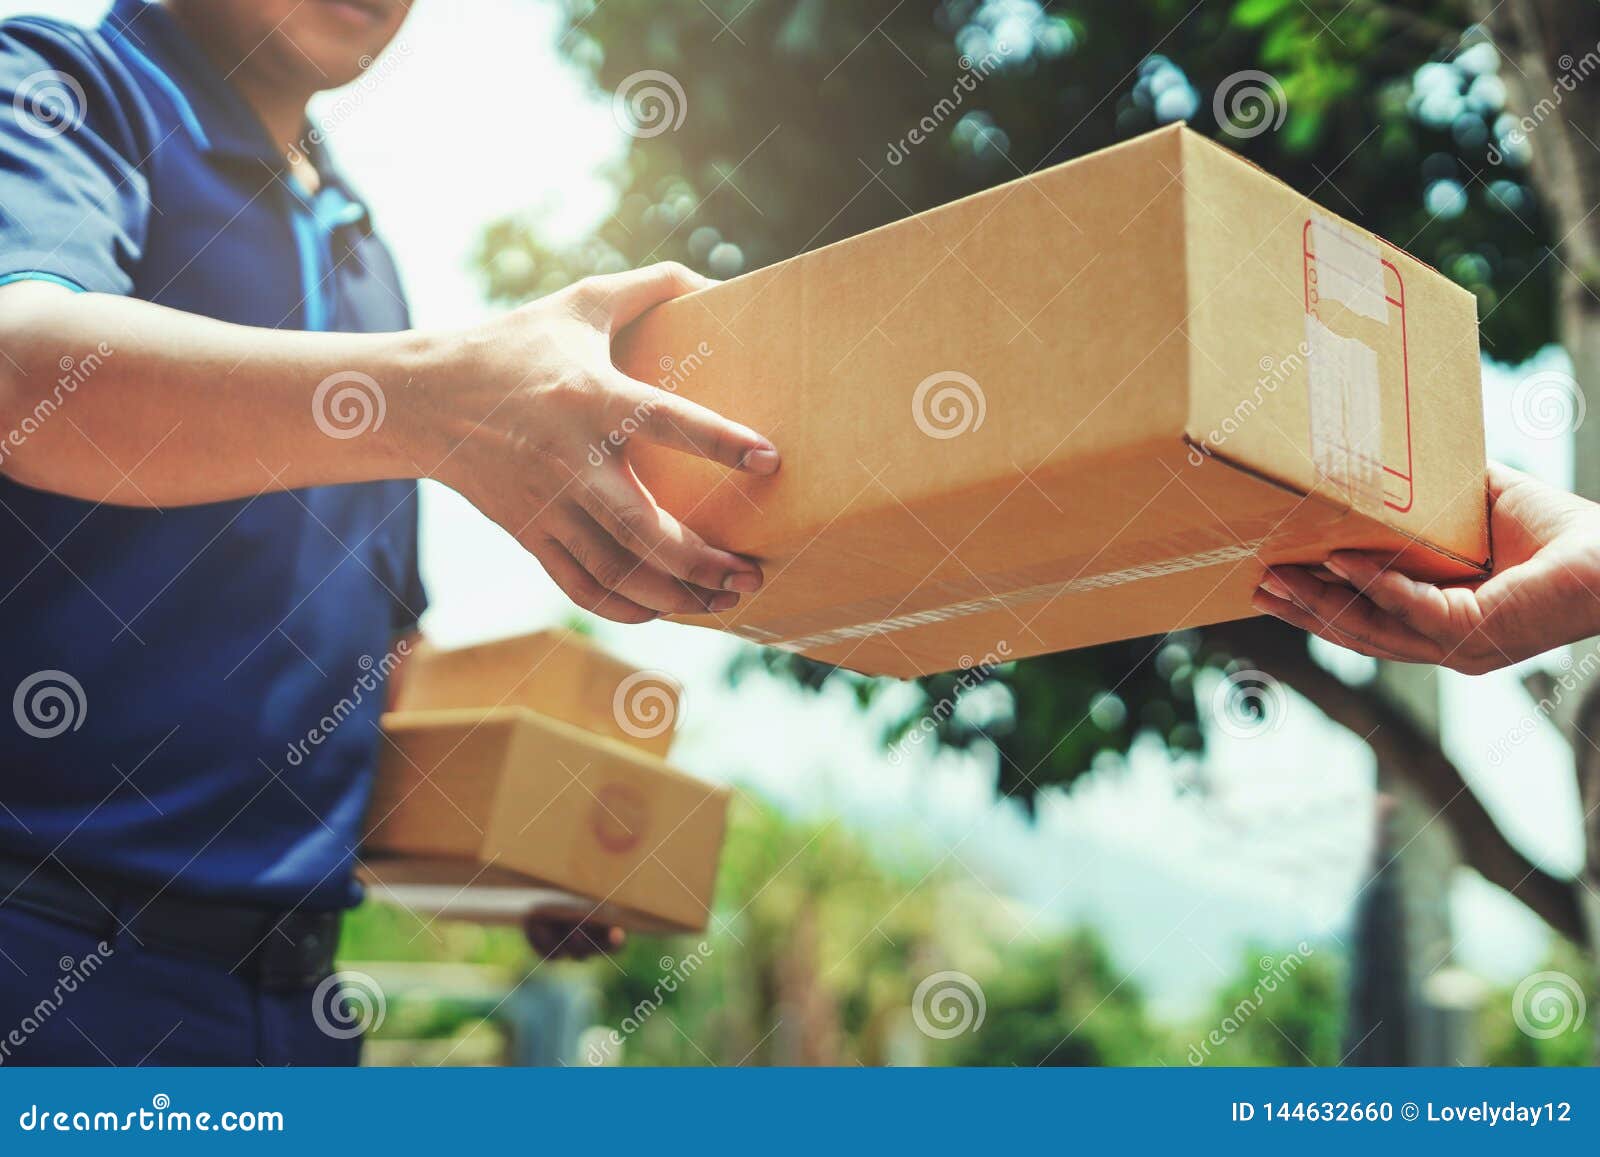 delivery man delivering holding parcel box